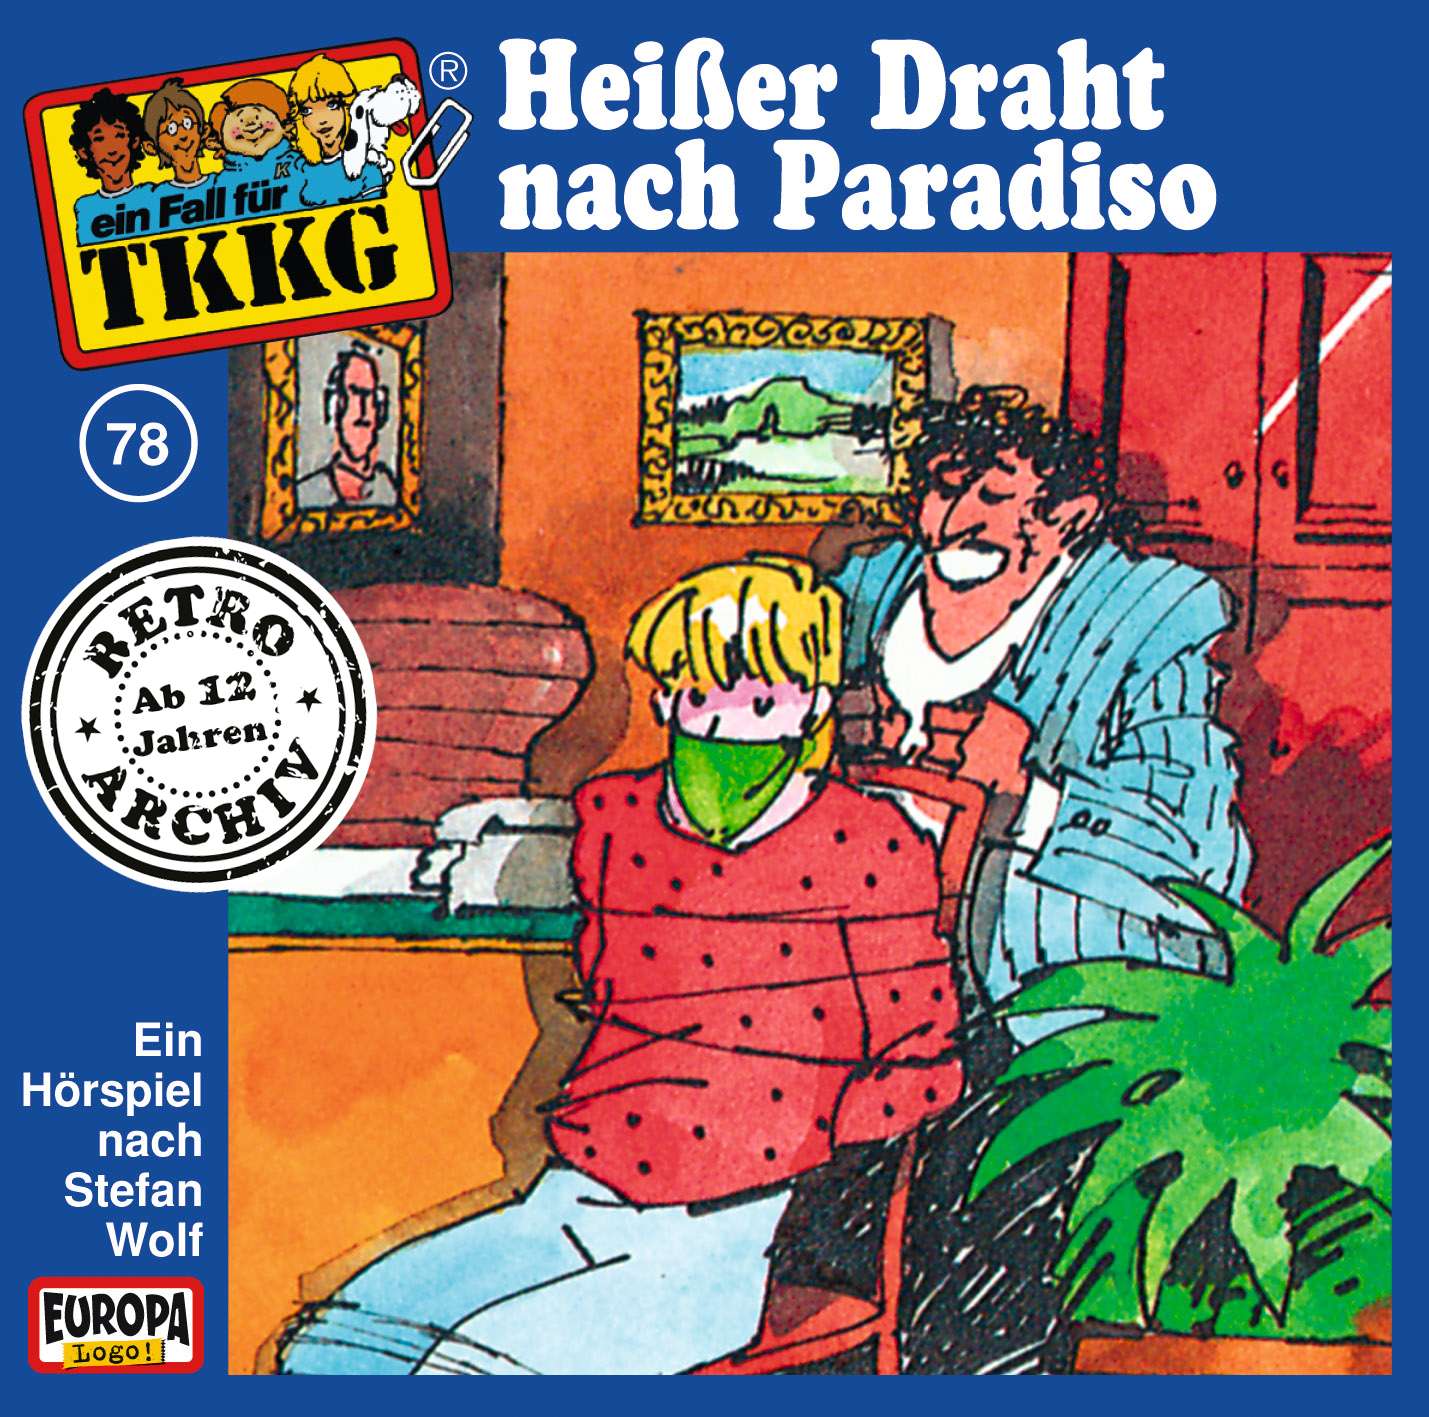 TKKG Retro-Archiv: Heißer Draht nach Paradiso